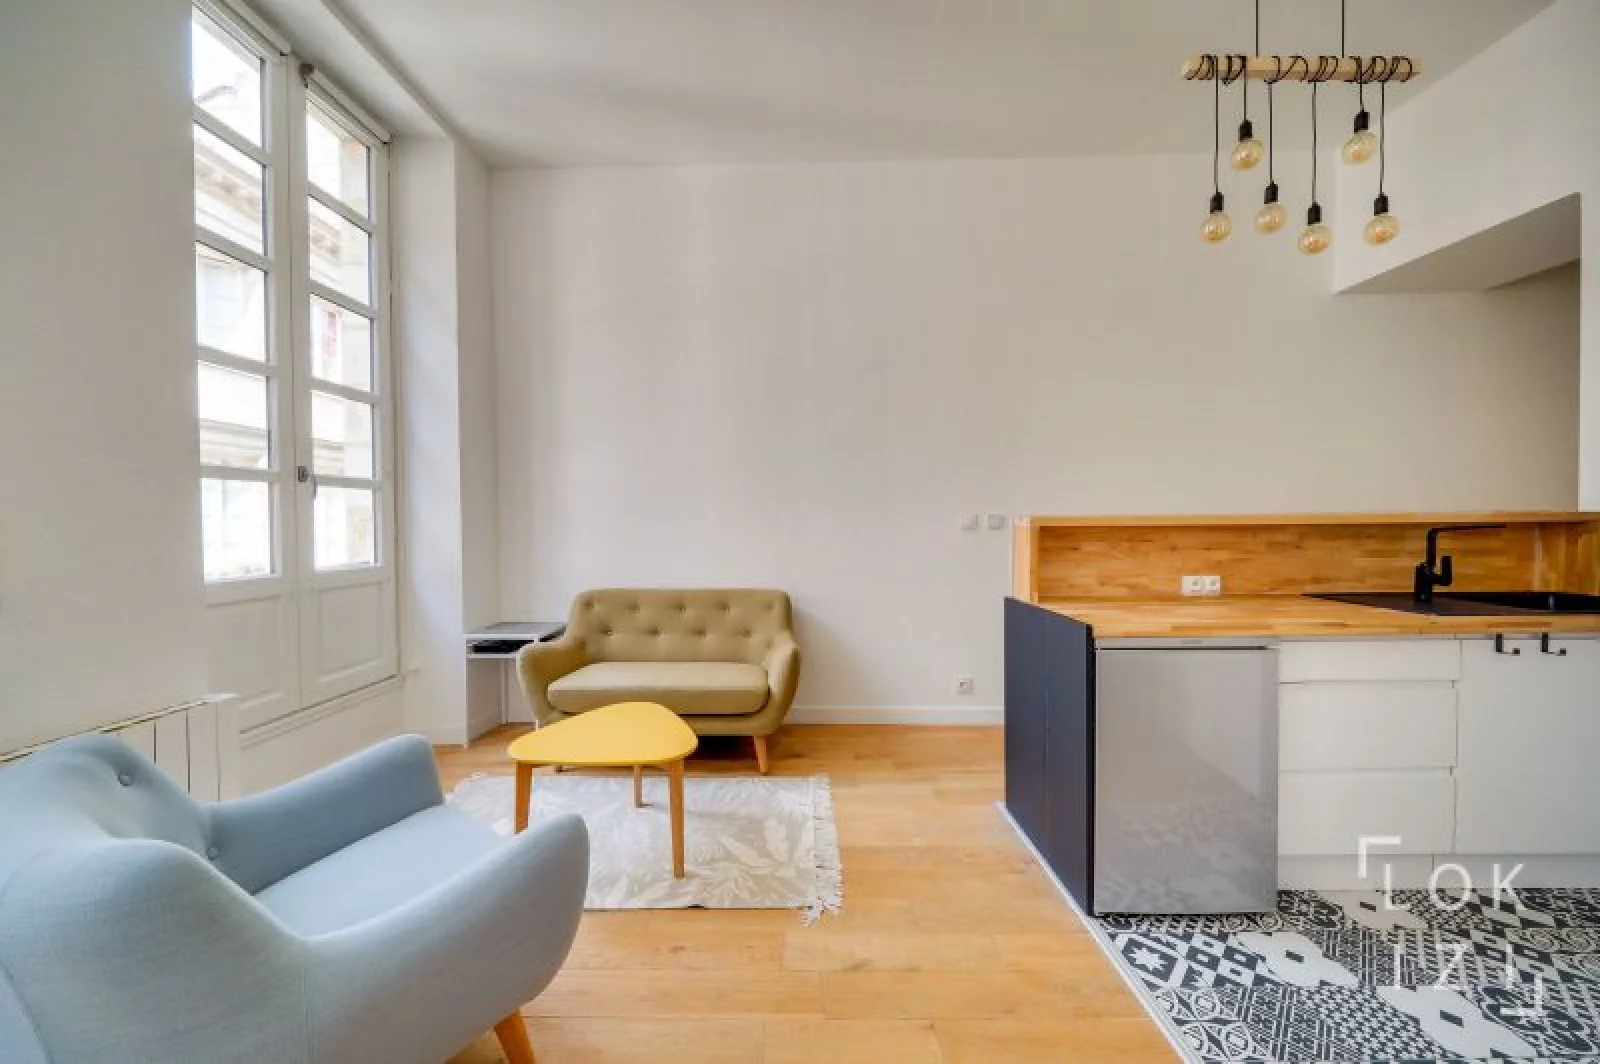 Location appartement meublé 2 pièces 37m² (Bordeaux centre - Bourse)